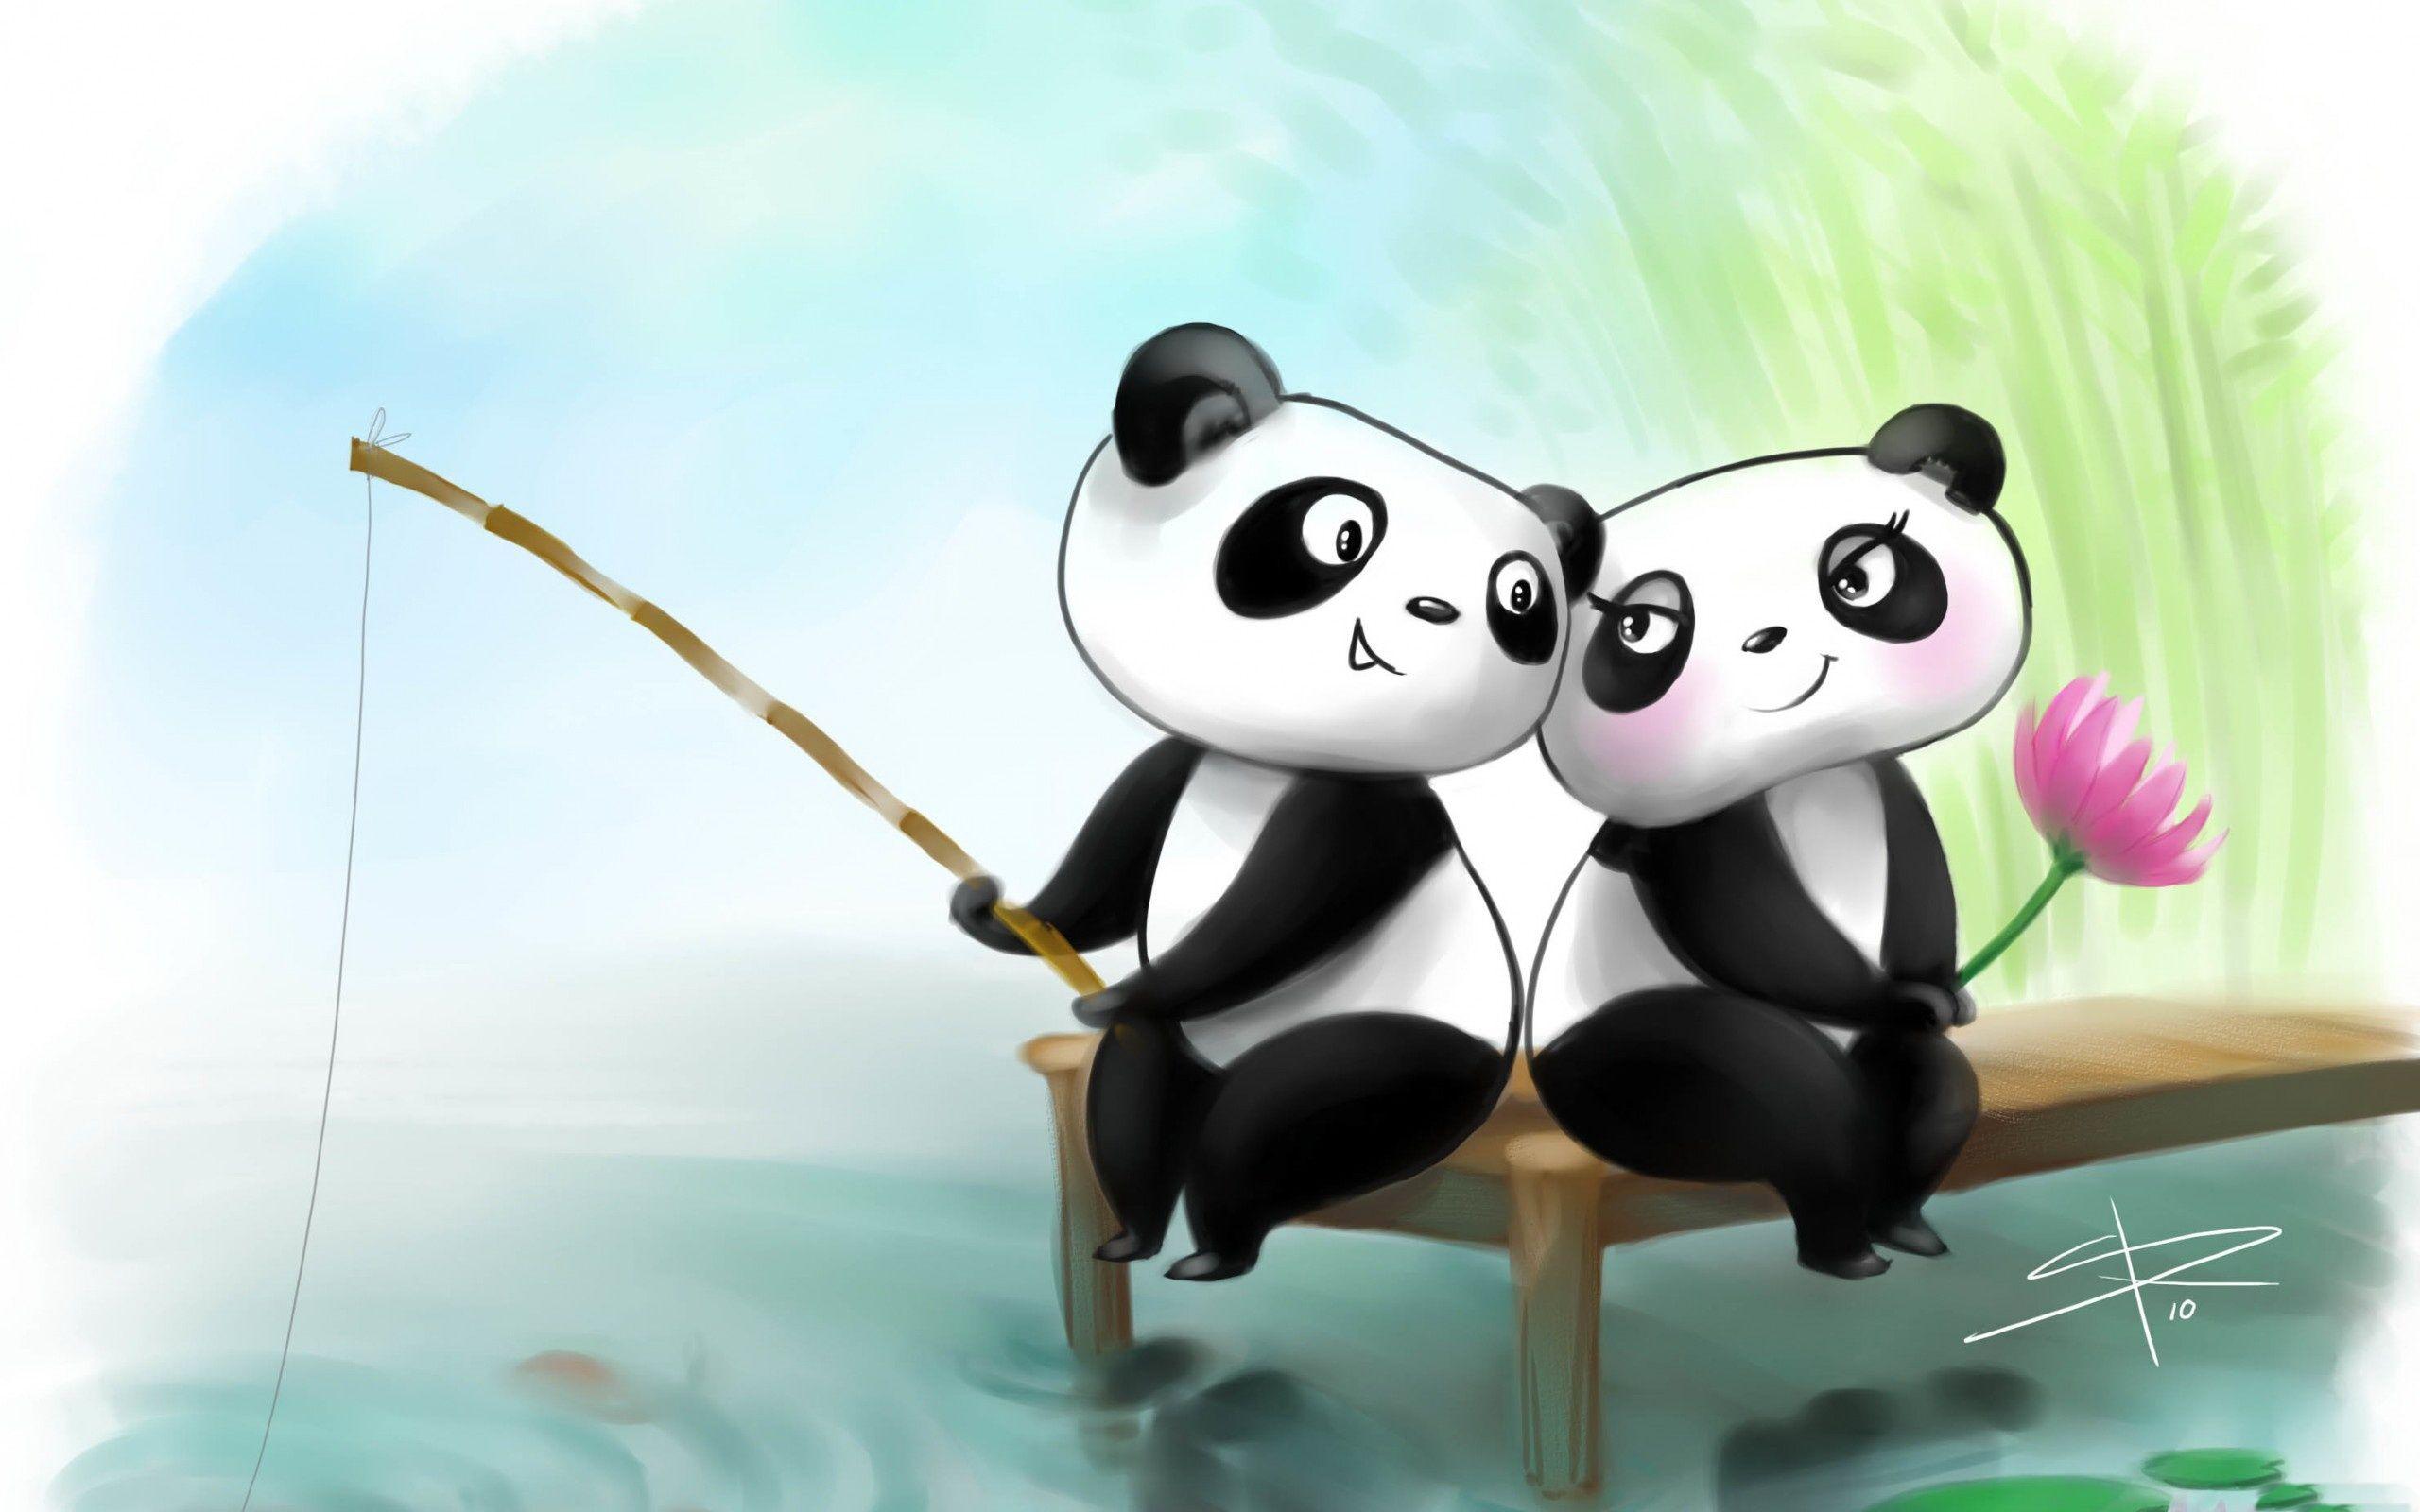 Cute Anime Panda Wallpapers - Top Hình Ảnh Đẹp